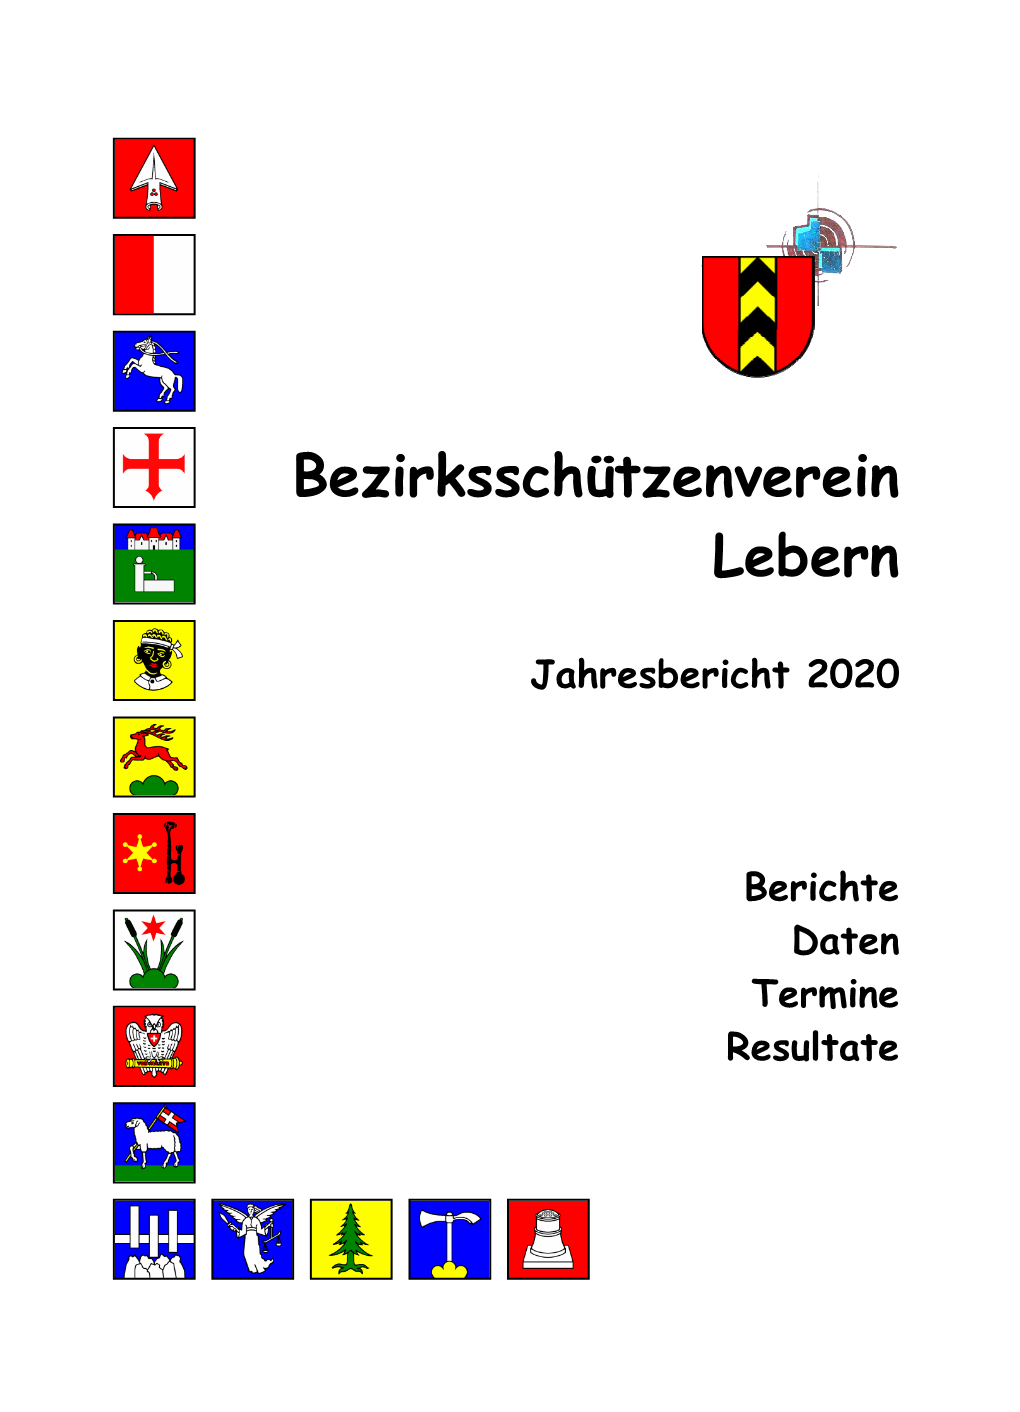 Bezirksschützenverein Lebern Rüttenen, Im Februar 2021